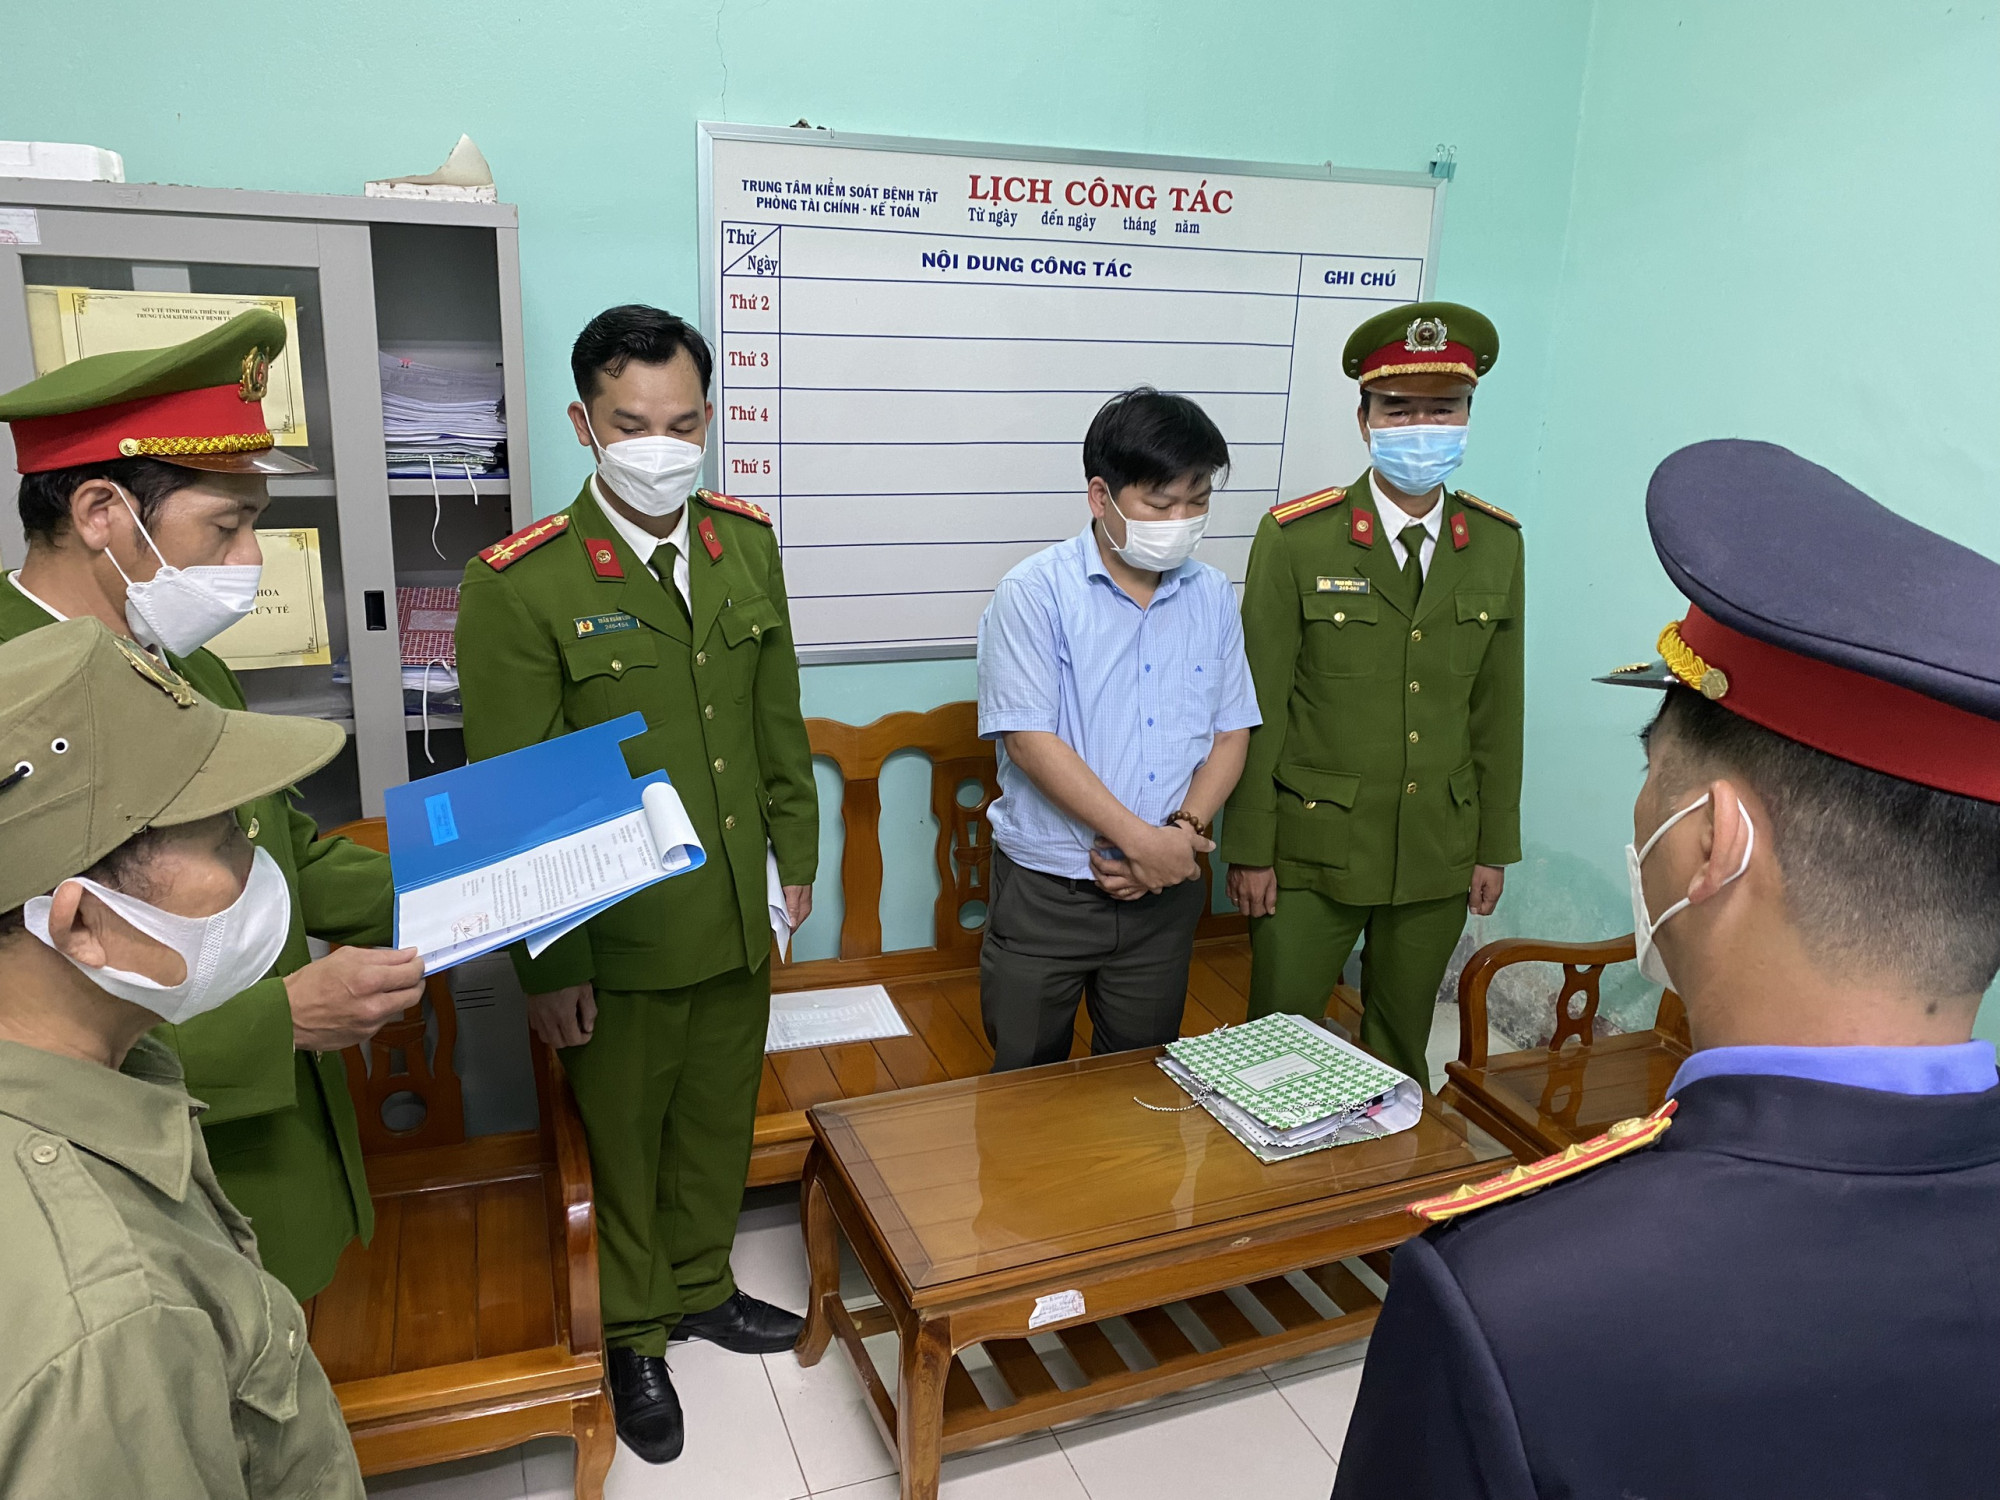 Đọc quyết định khởi tố ông Hà Thúc Nhật - kế toán trưởng của CDC Thừa Thiên Huế 